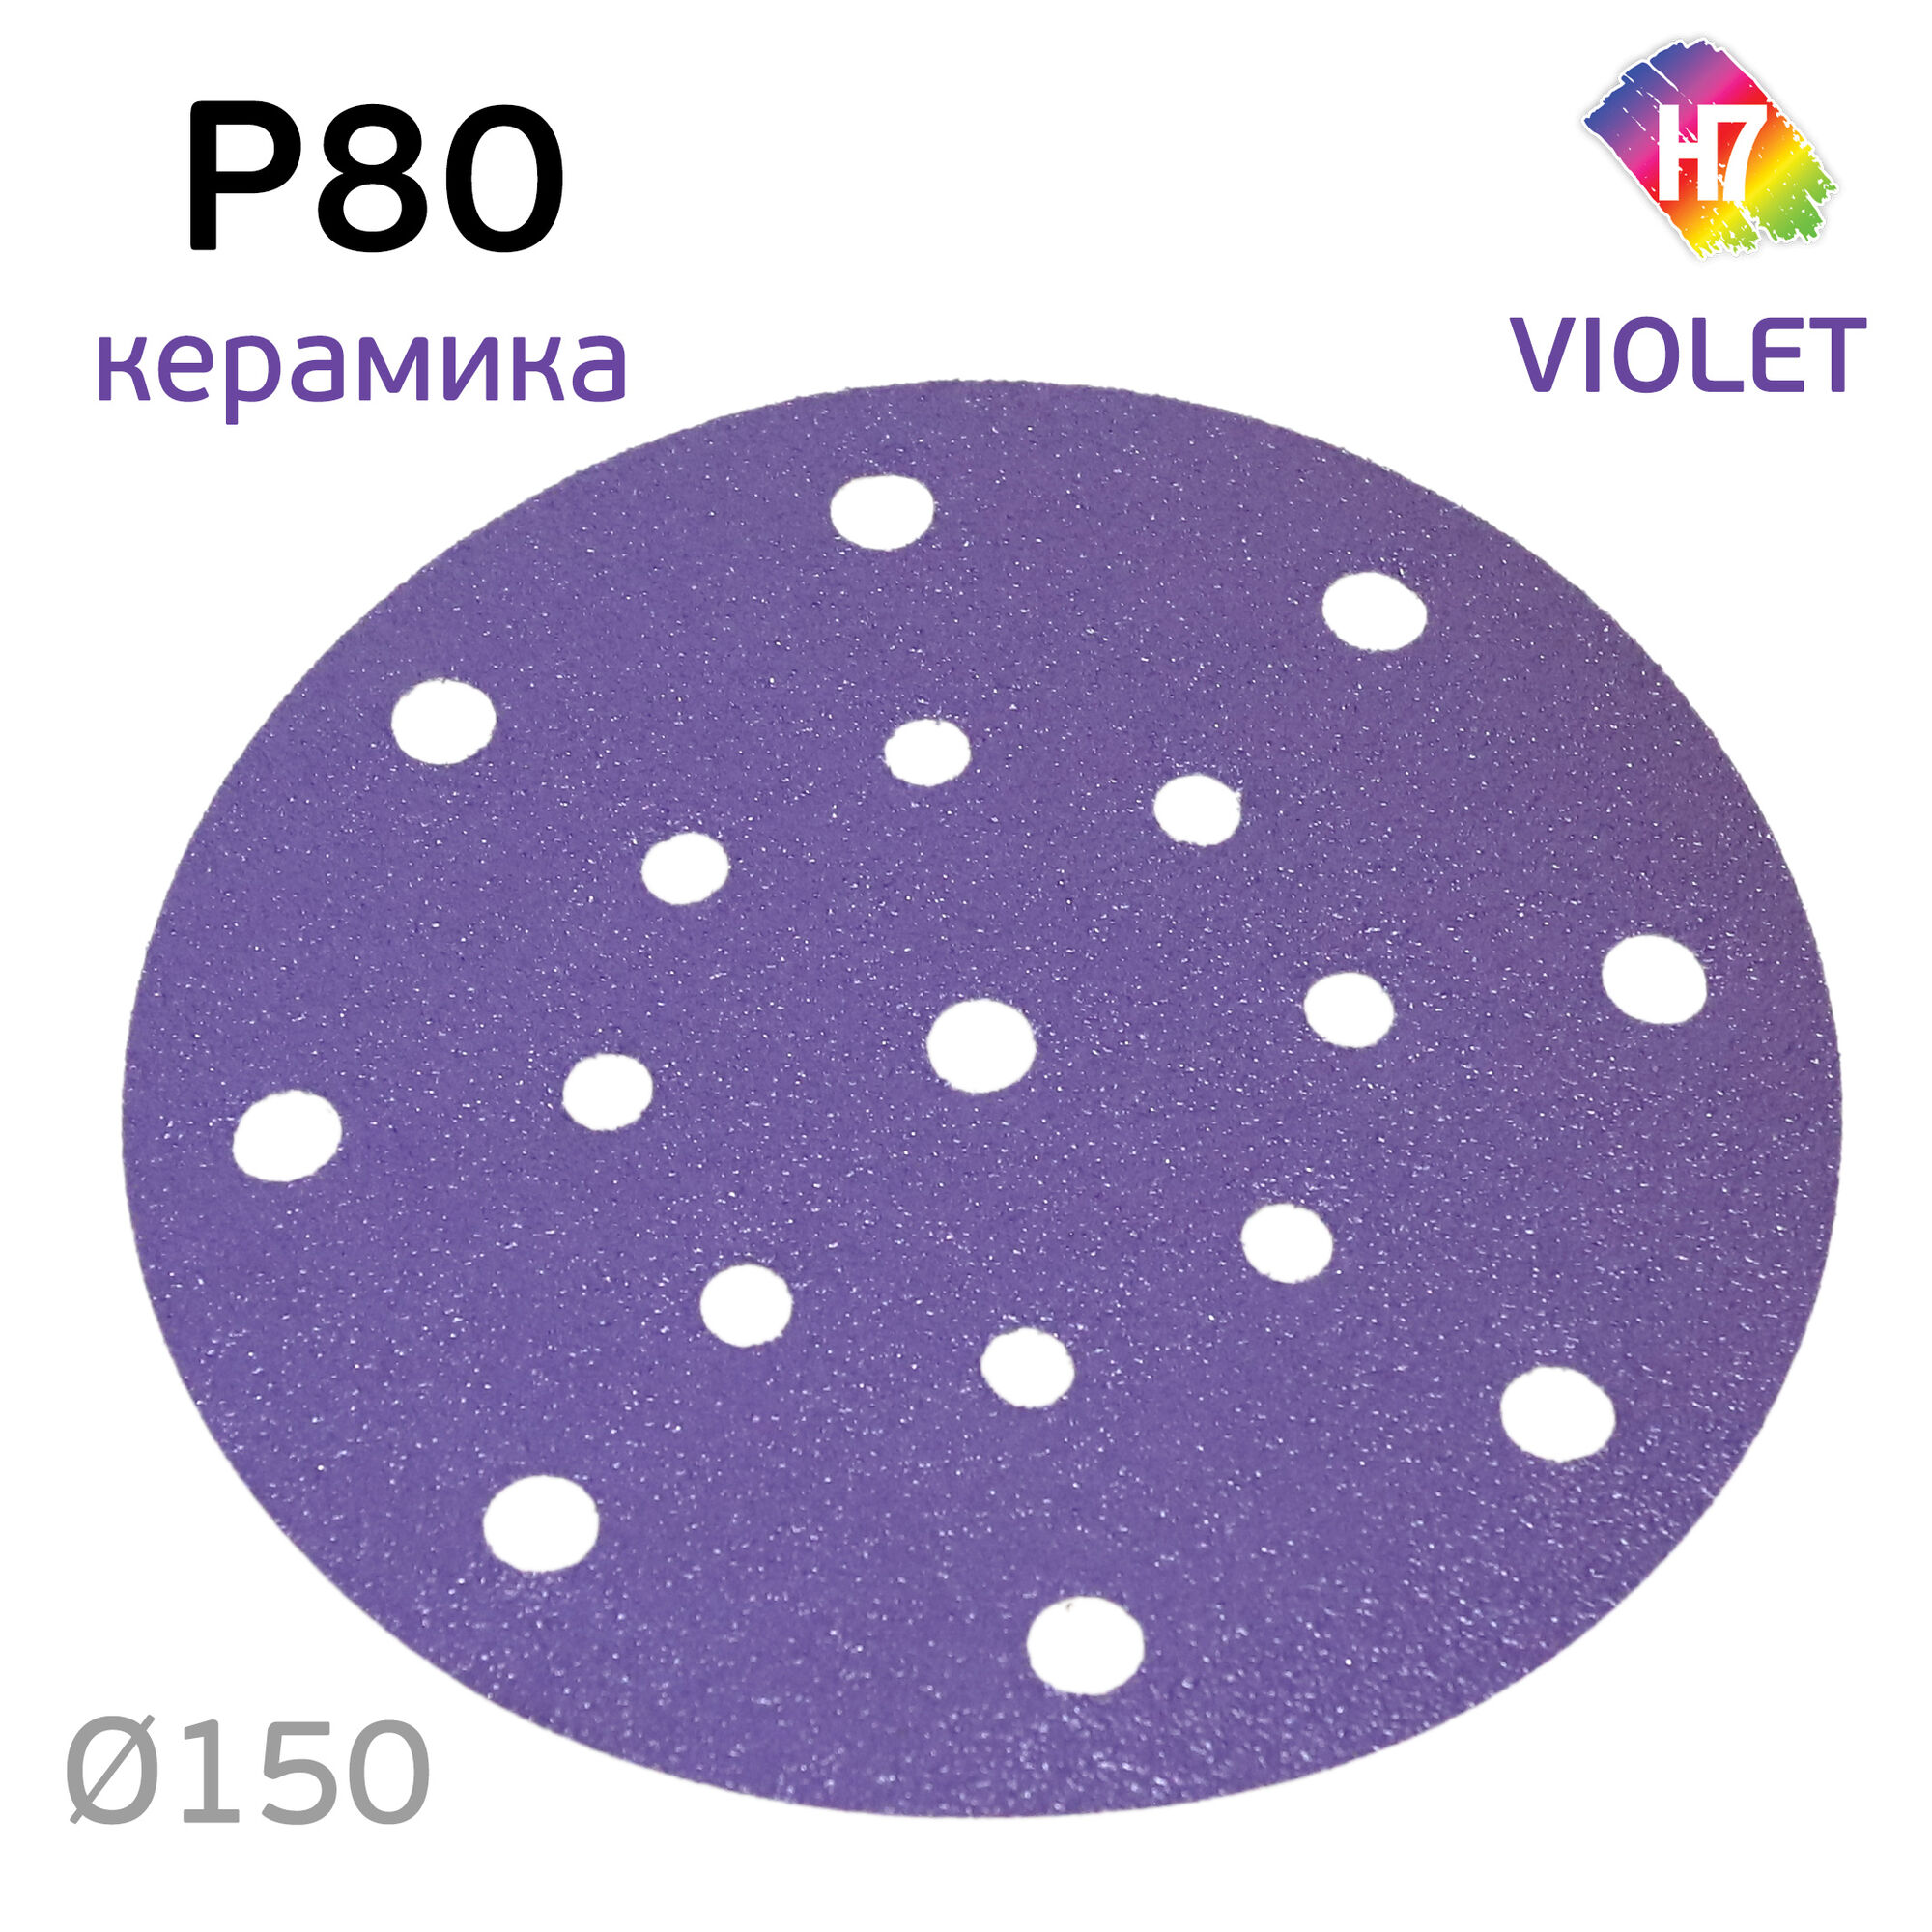 Круг абразивный H7 Violet P80 липучка (17отв.) керамическое зерно